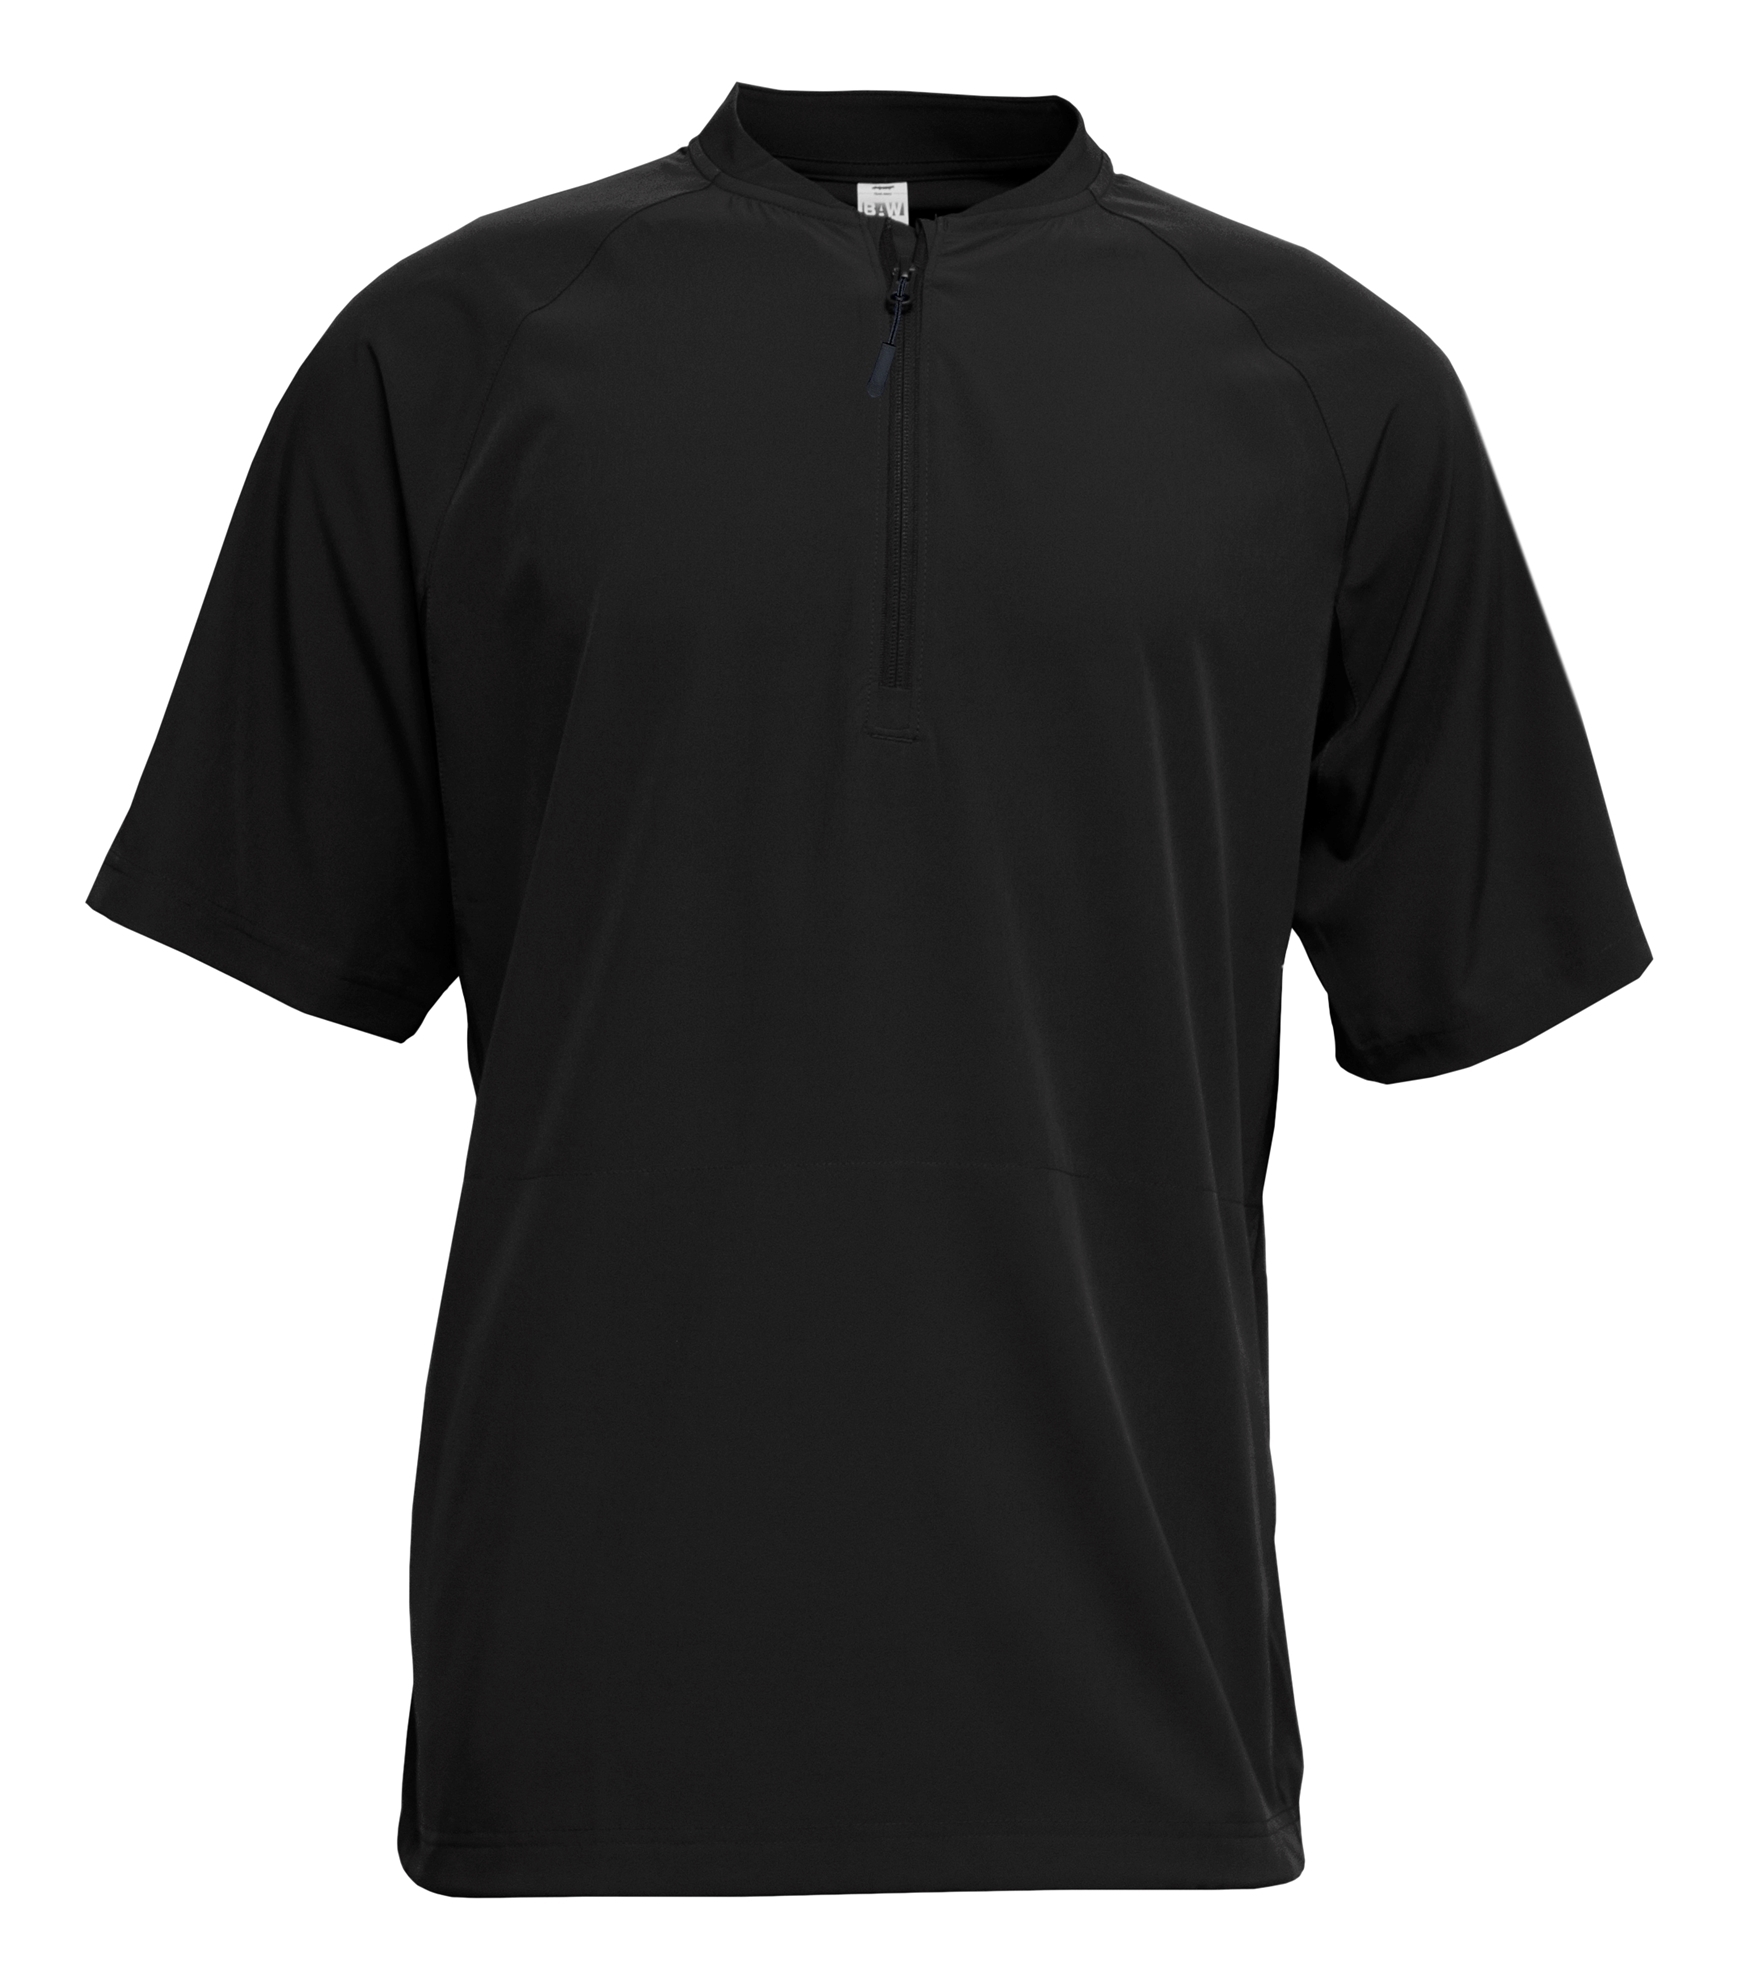 BAW Athletic Wear CJ136Y - Youth Over Shirt